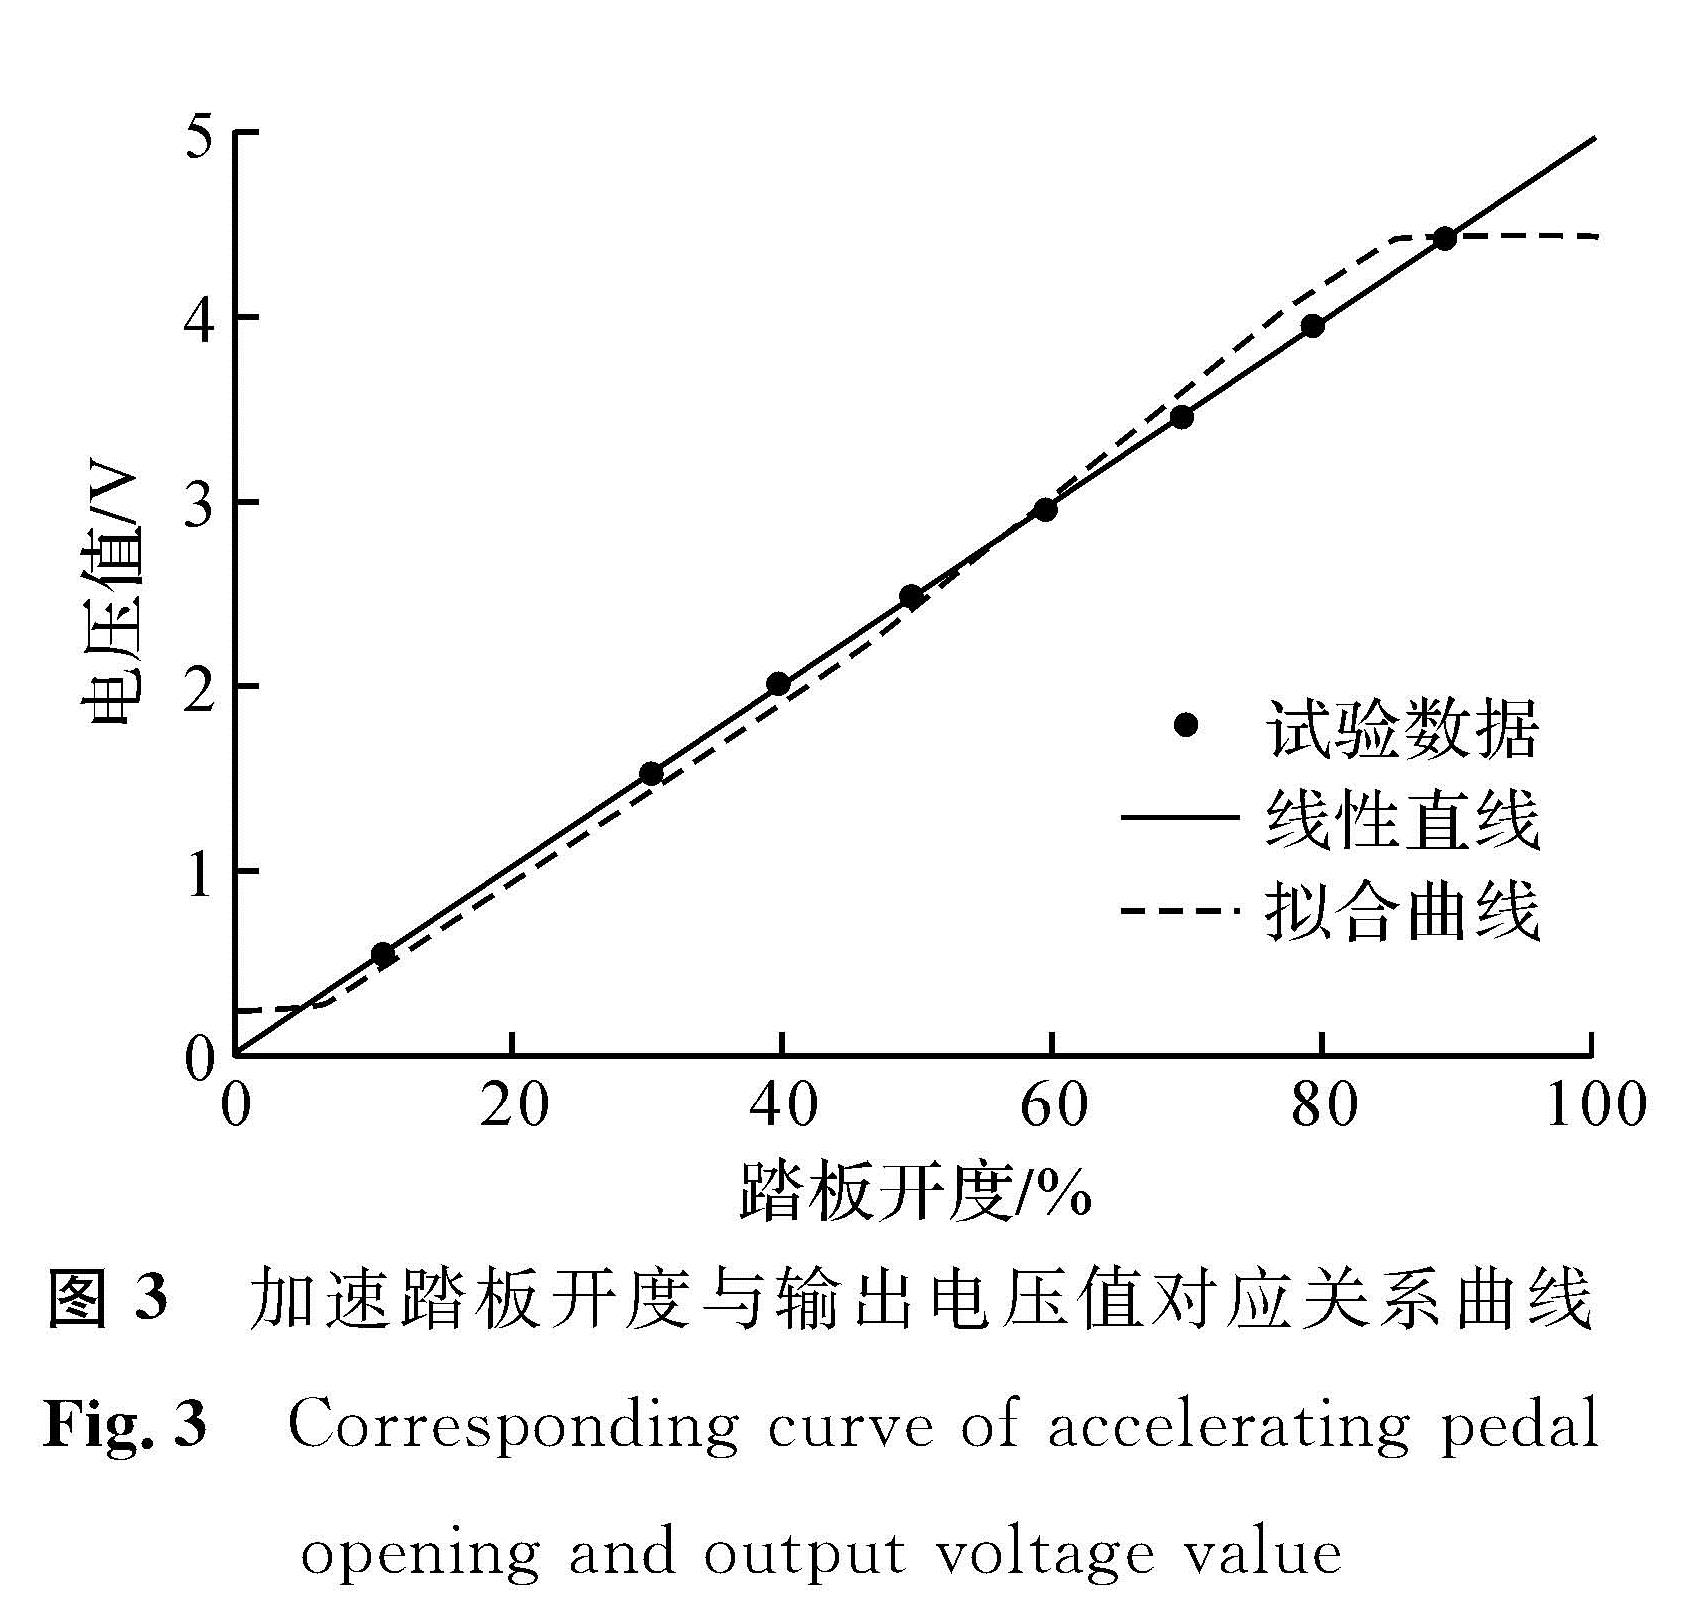 图3 加速踏板开度与输出电压值对应关系曲线<br/>Fig.3 Corresponding curve of accelerating pedal opening and output voltage value